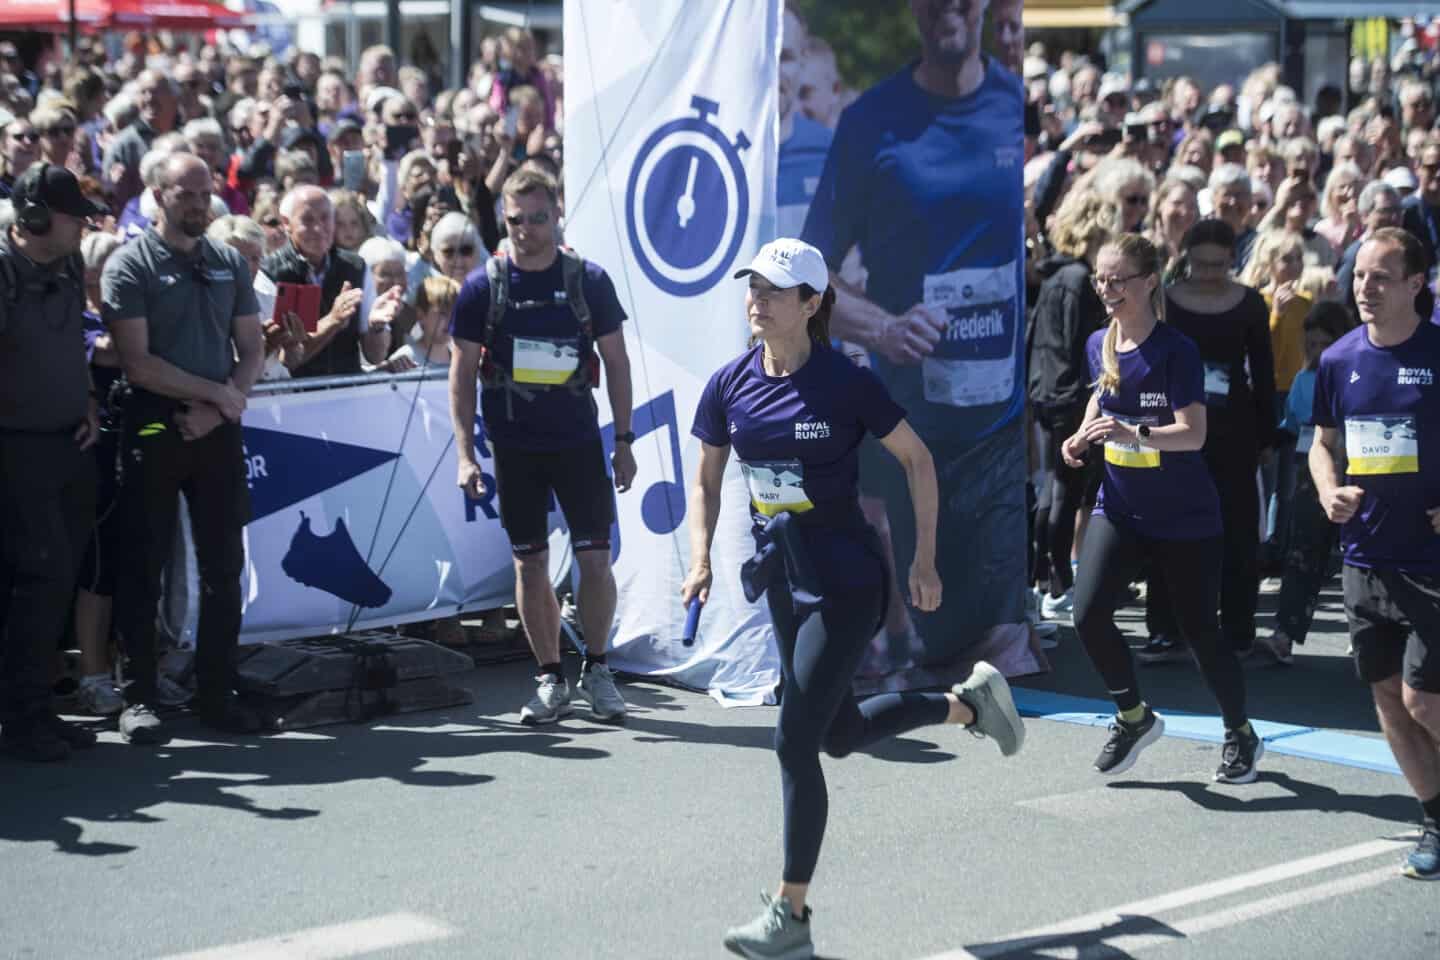 Royal vil fastholde nye løbere idrættens verden | avisendanmark.dk